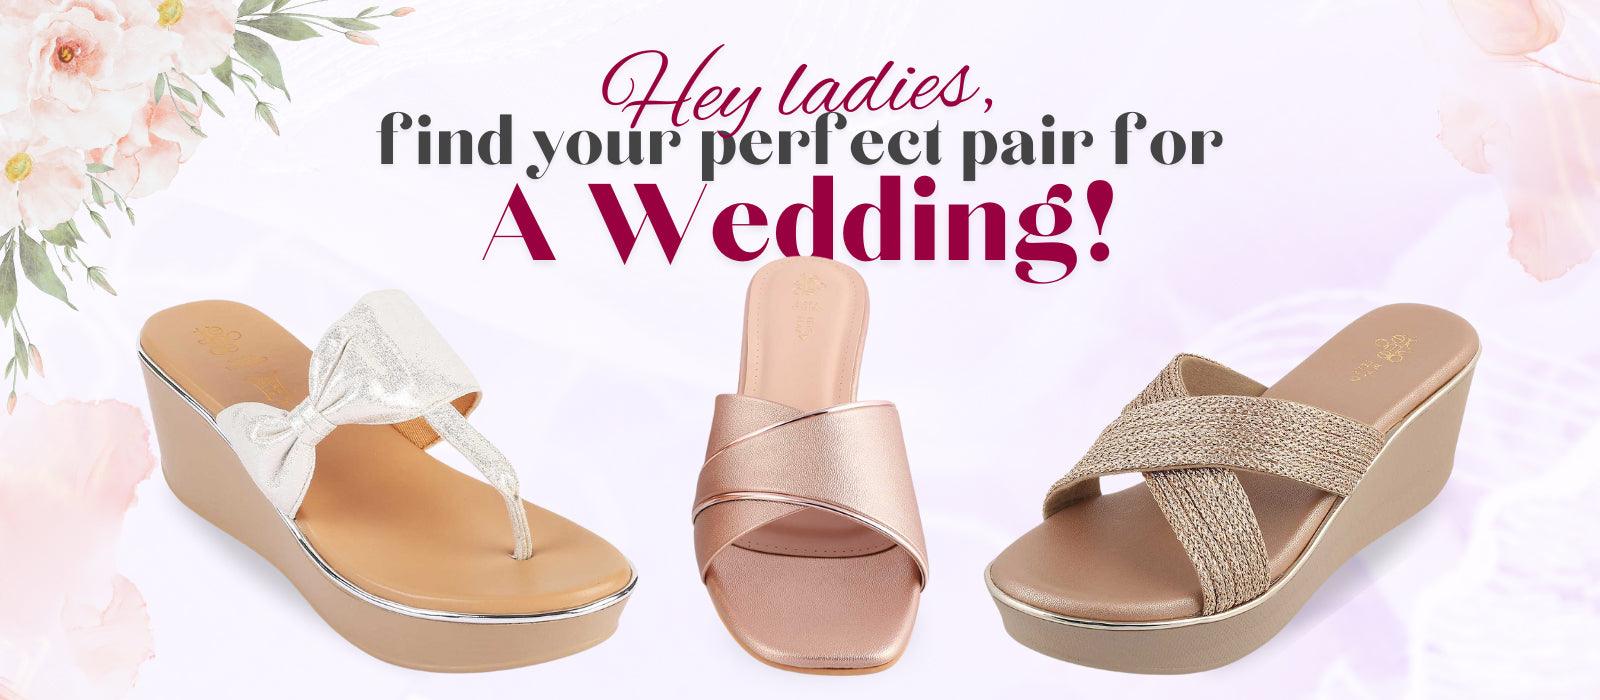 A Guide to choosing women’s wedding shoes - Tresmode